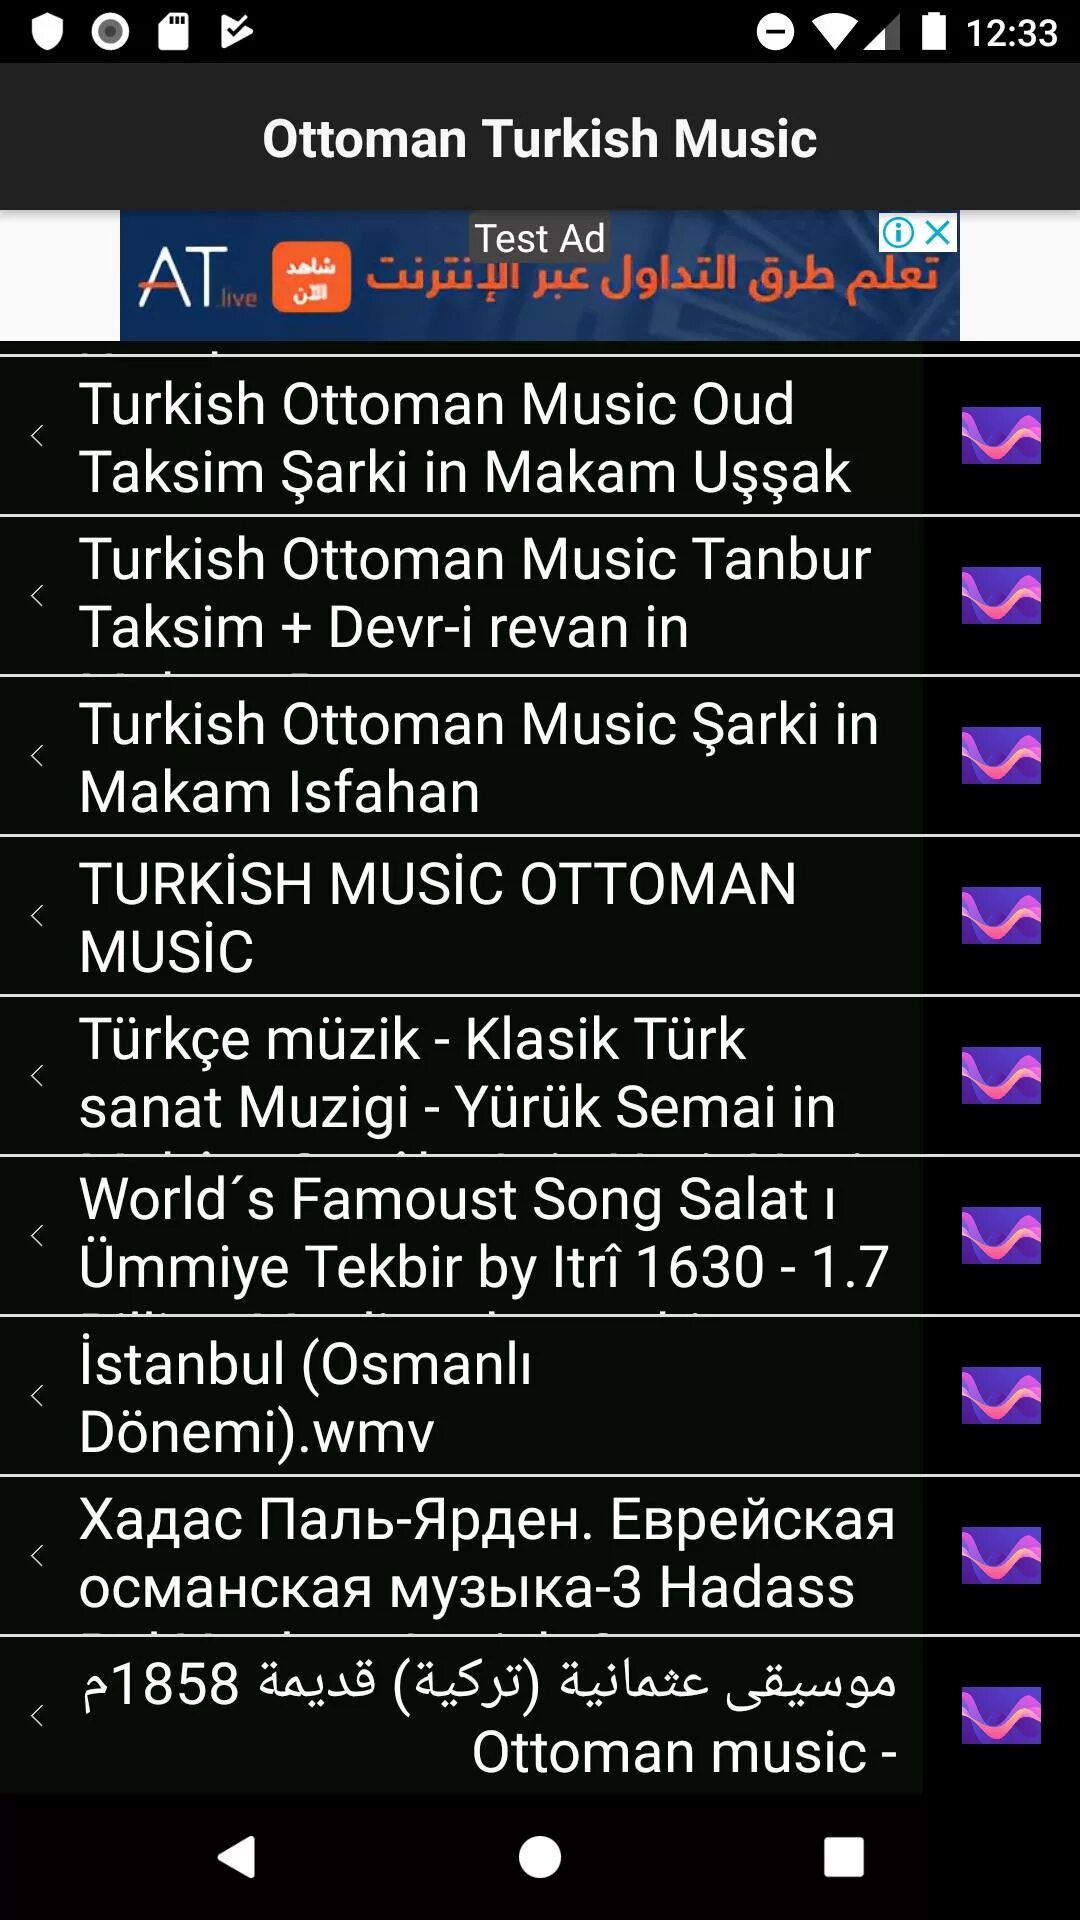 Турецкая музыка. Турецкая музыка факты. Турецкая музыка слушать. Лучшие турецкие песни. Турецкая музыка на звонок